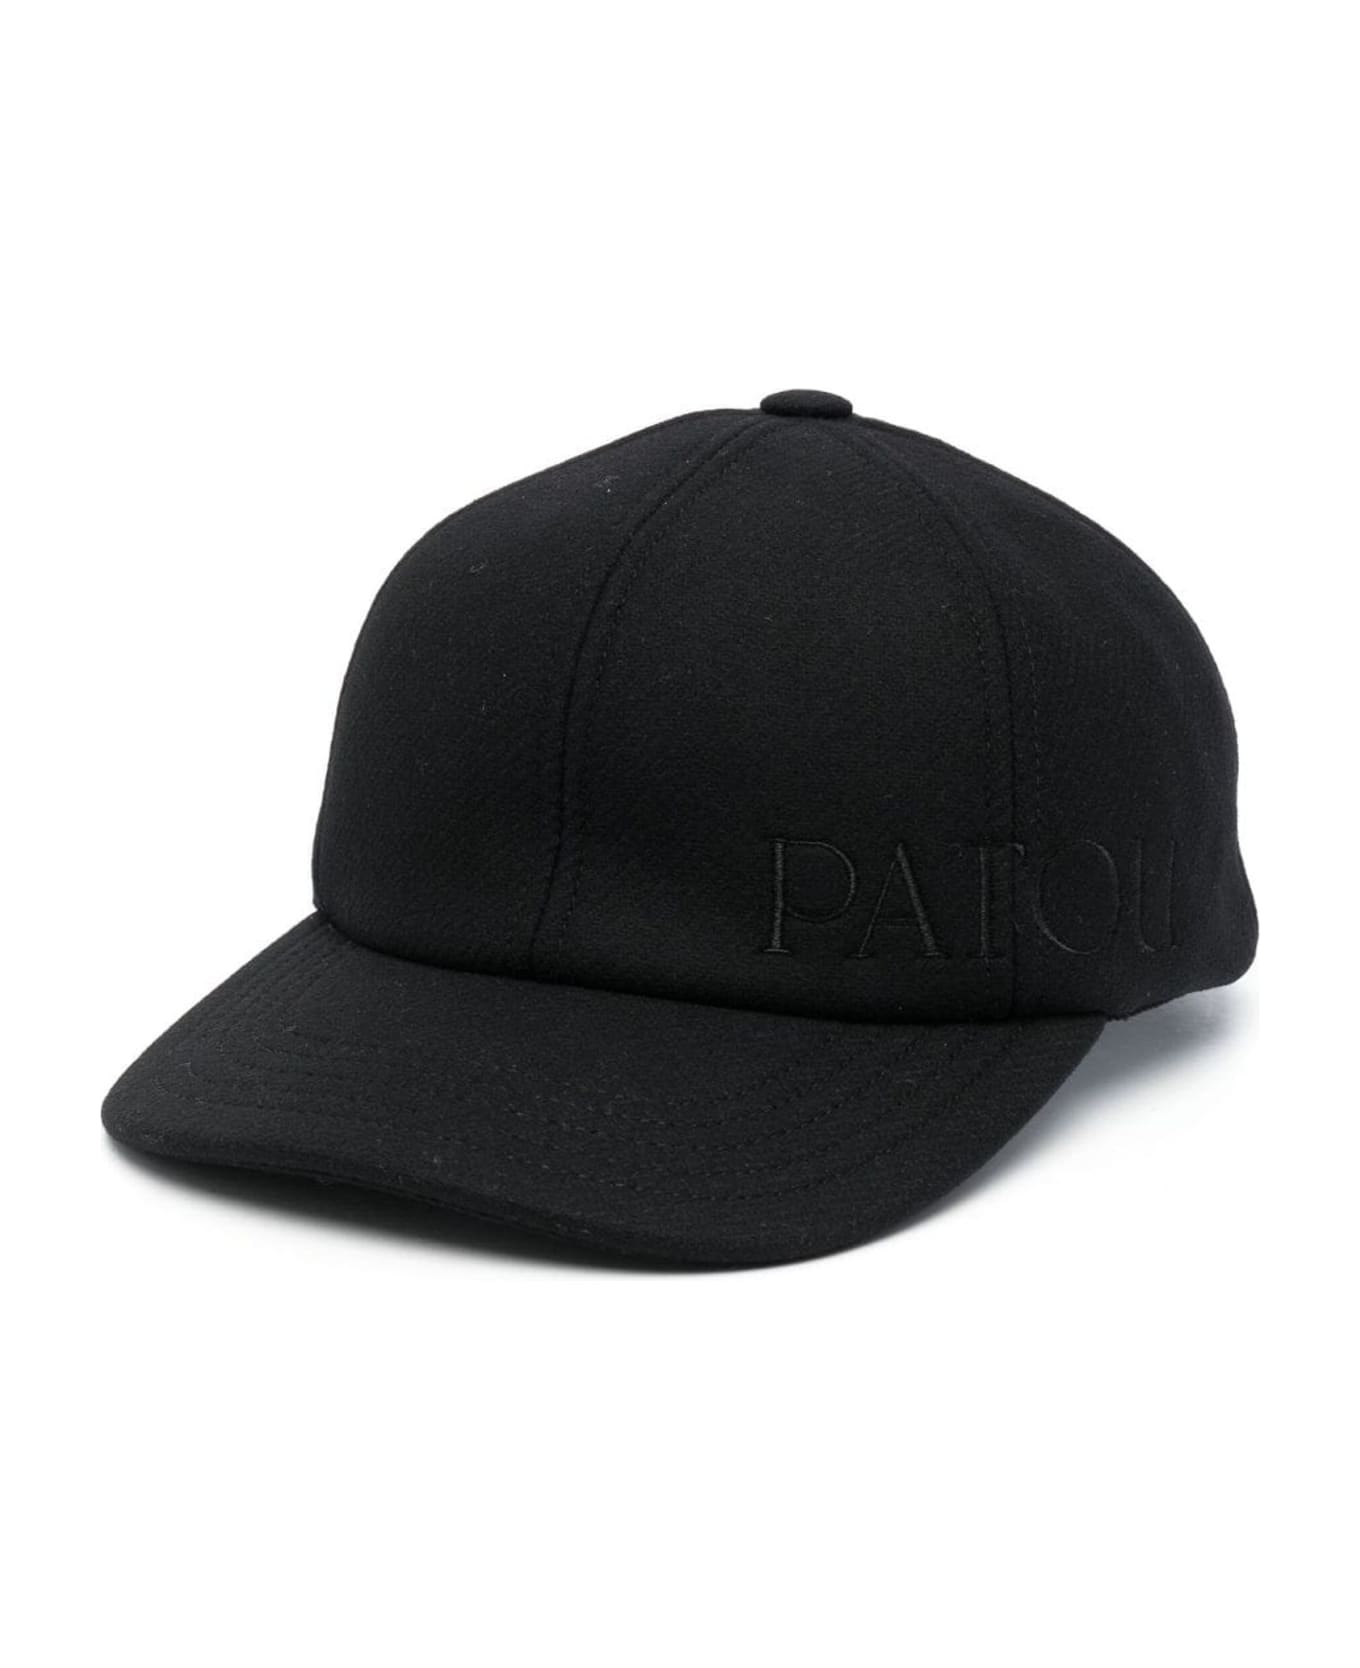 Patou Black Virgin Wool Blend Cap 帽子